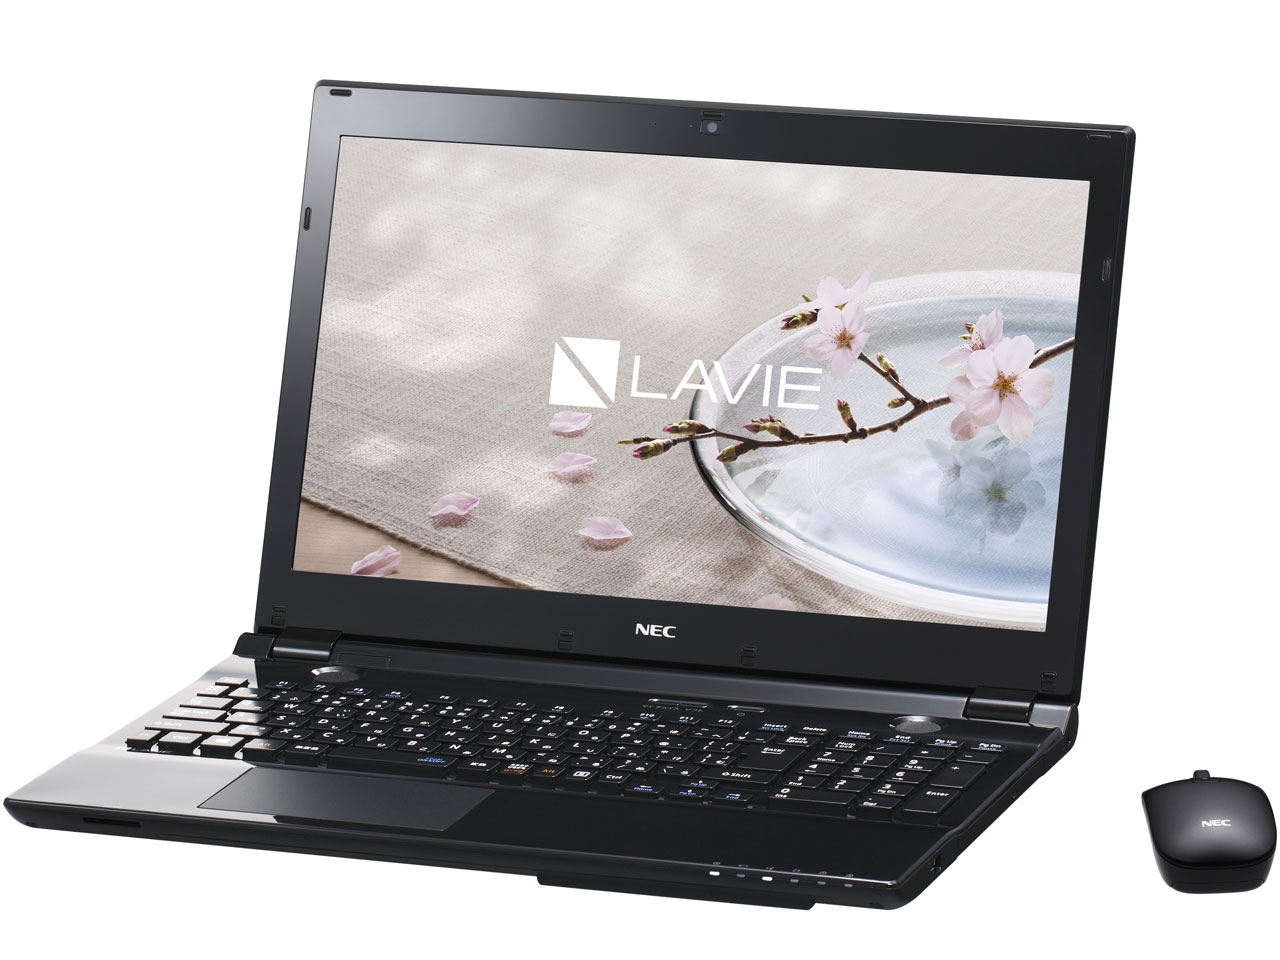 価格.com - LAVIE Note Standard NS700/DAB PC-NS700DAB [クリスタルブラック] の製品画像